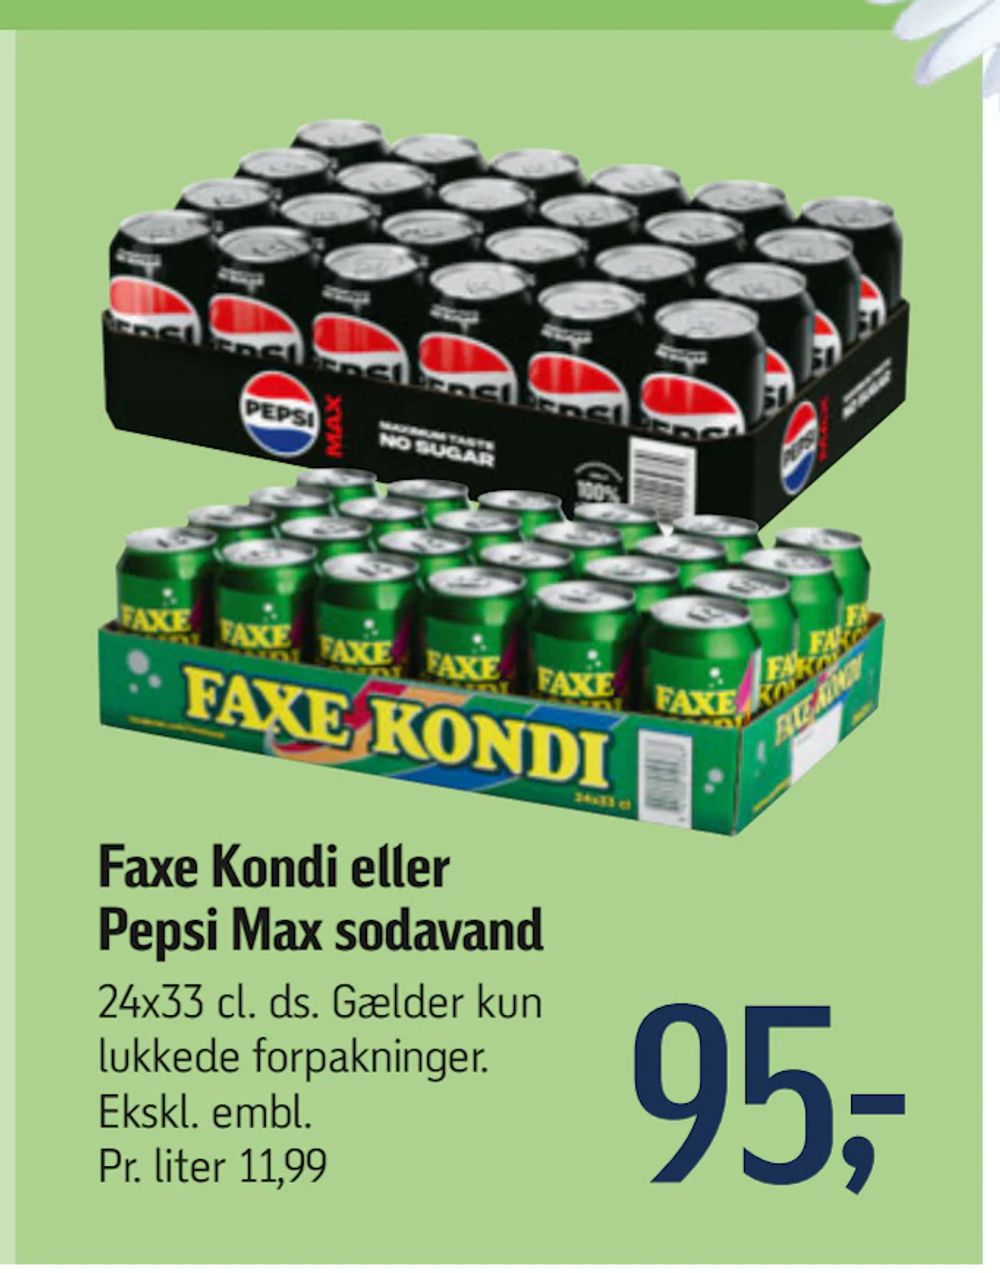 Tilbud på Faxe Kondi eller Pepsi Max sodavand fra føtex til 95 kr.